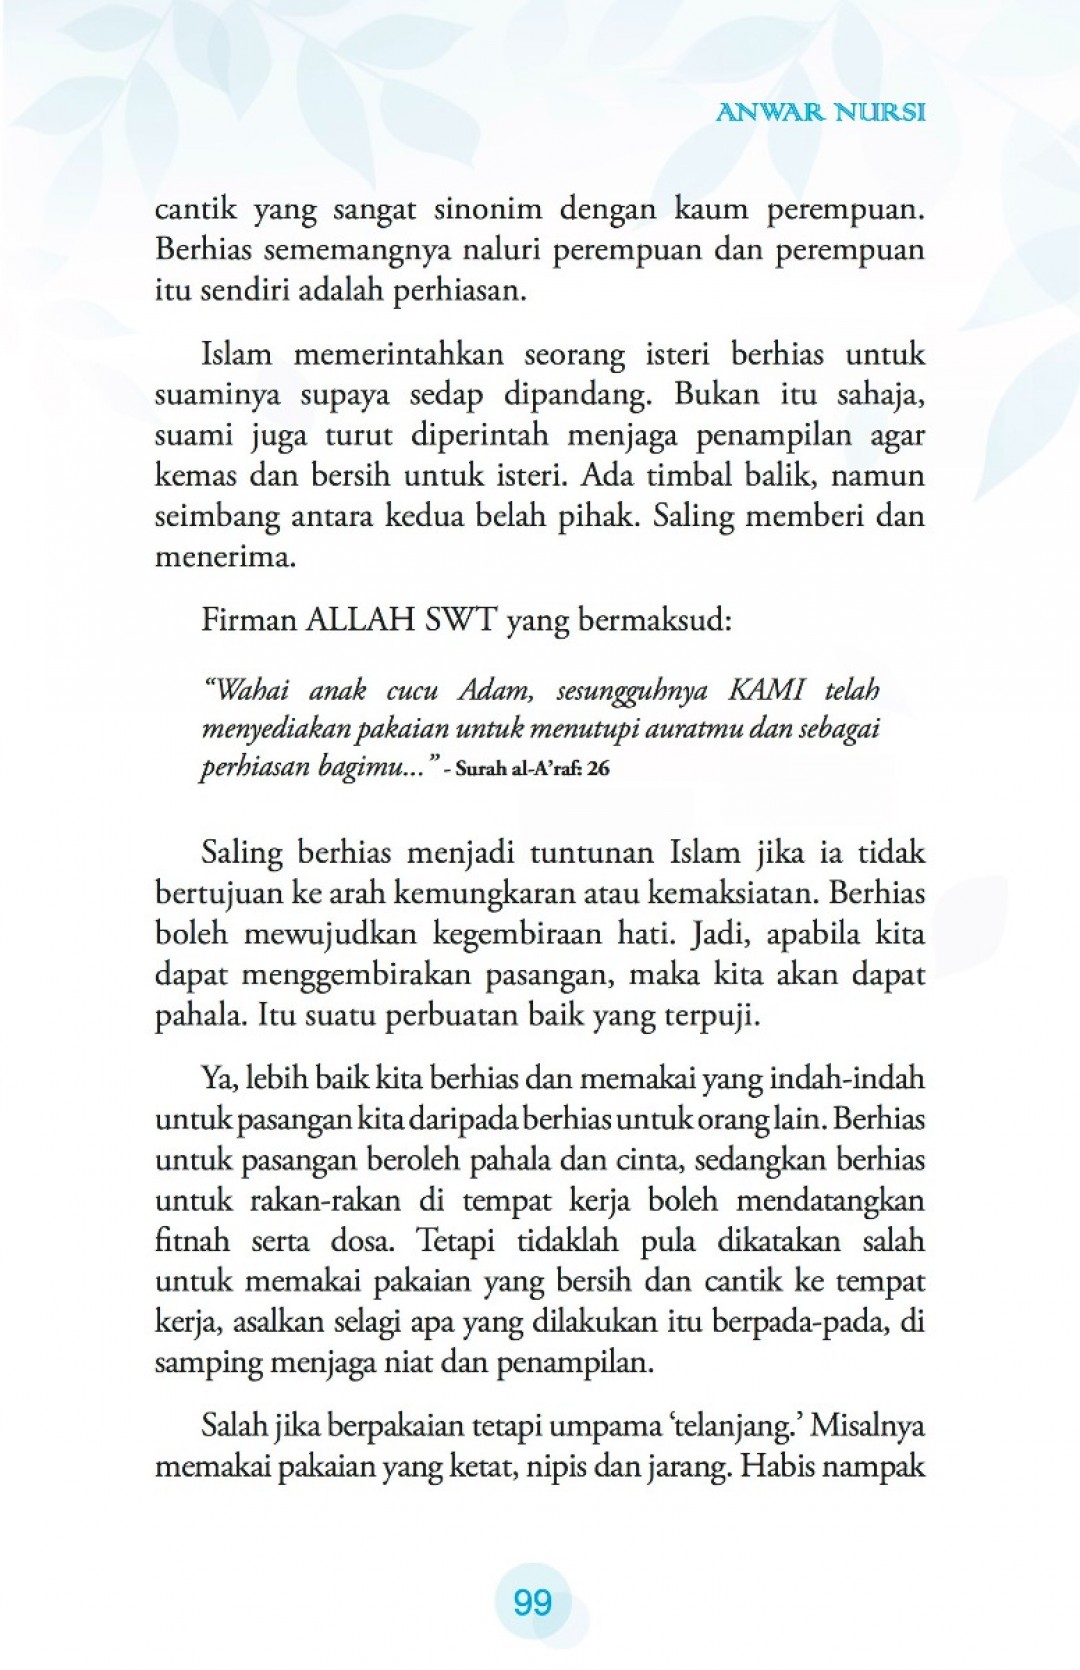 Manual Rumah Tangga - Anwar Nursi